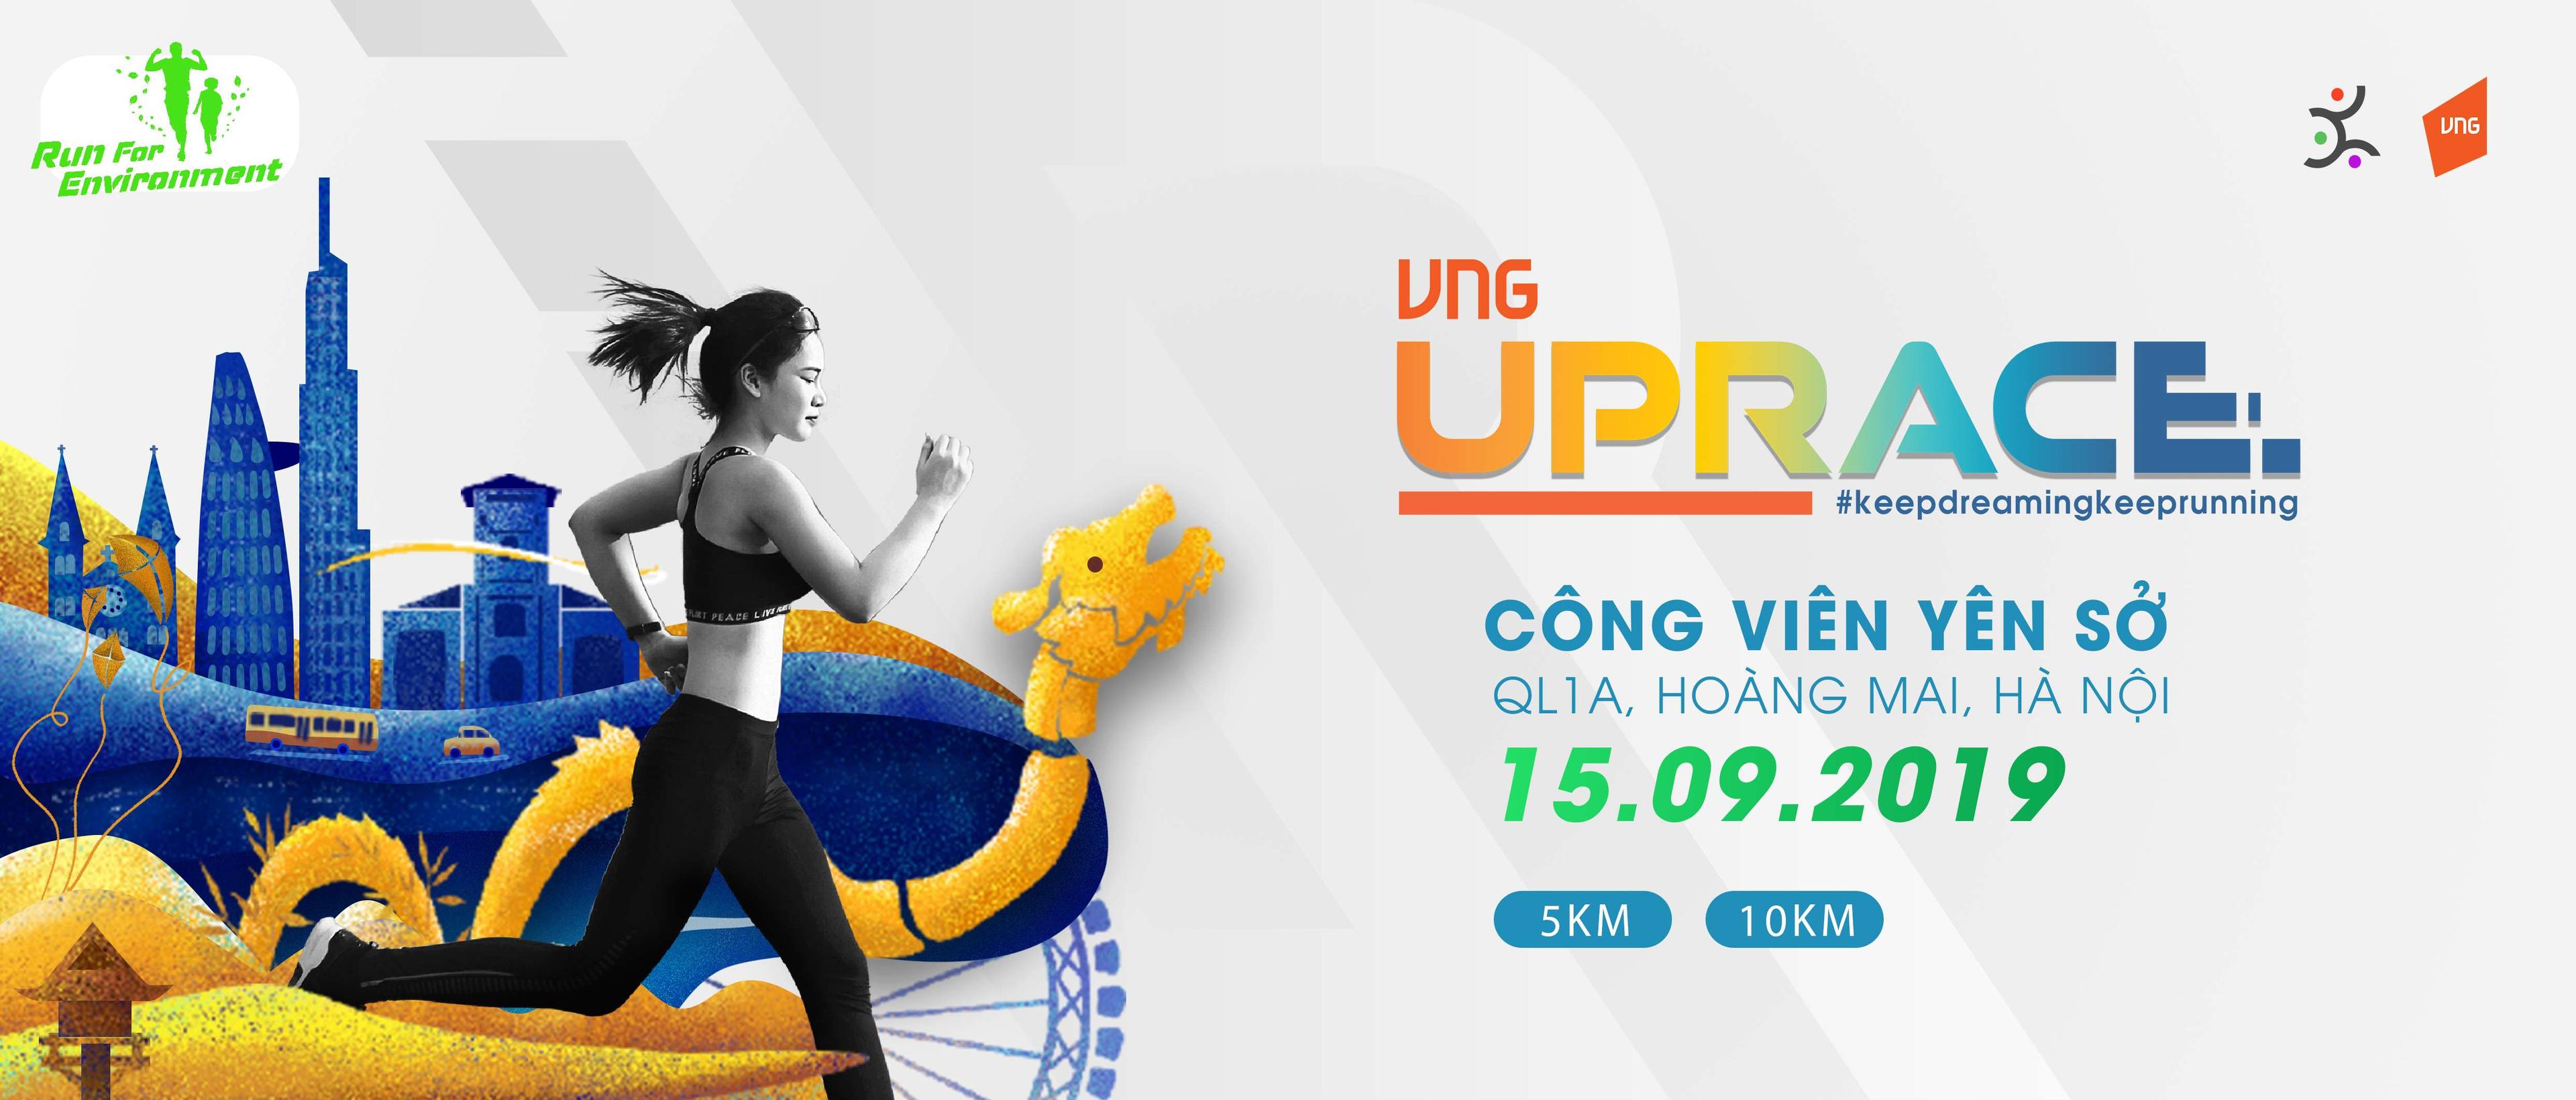 VNG Uprace Day 2019